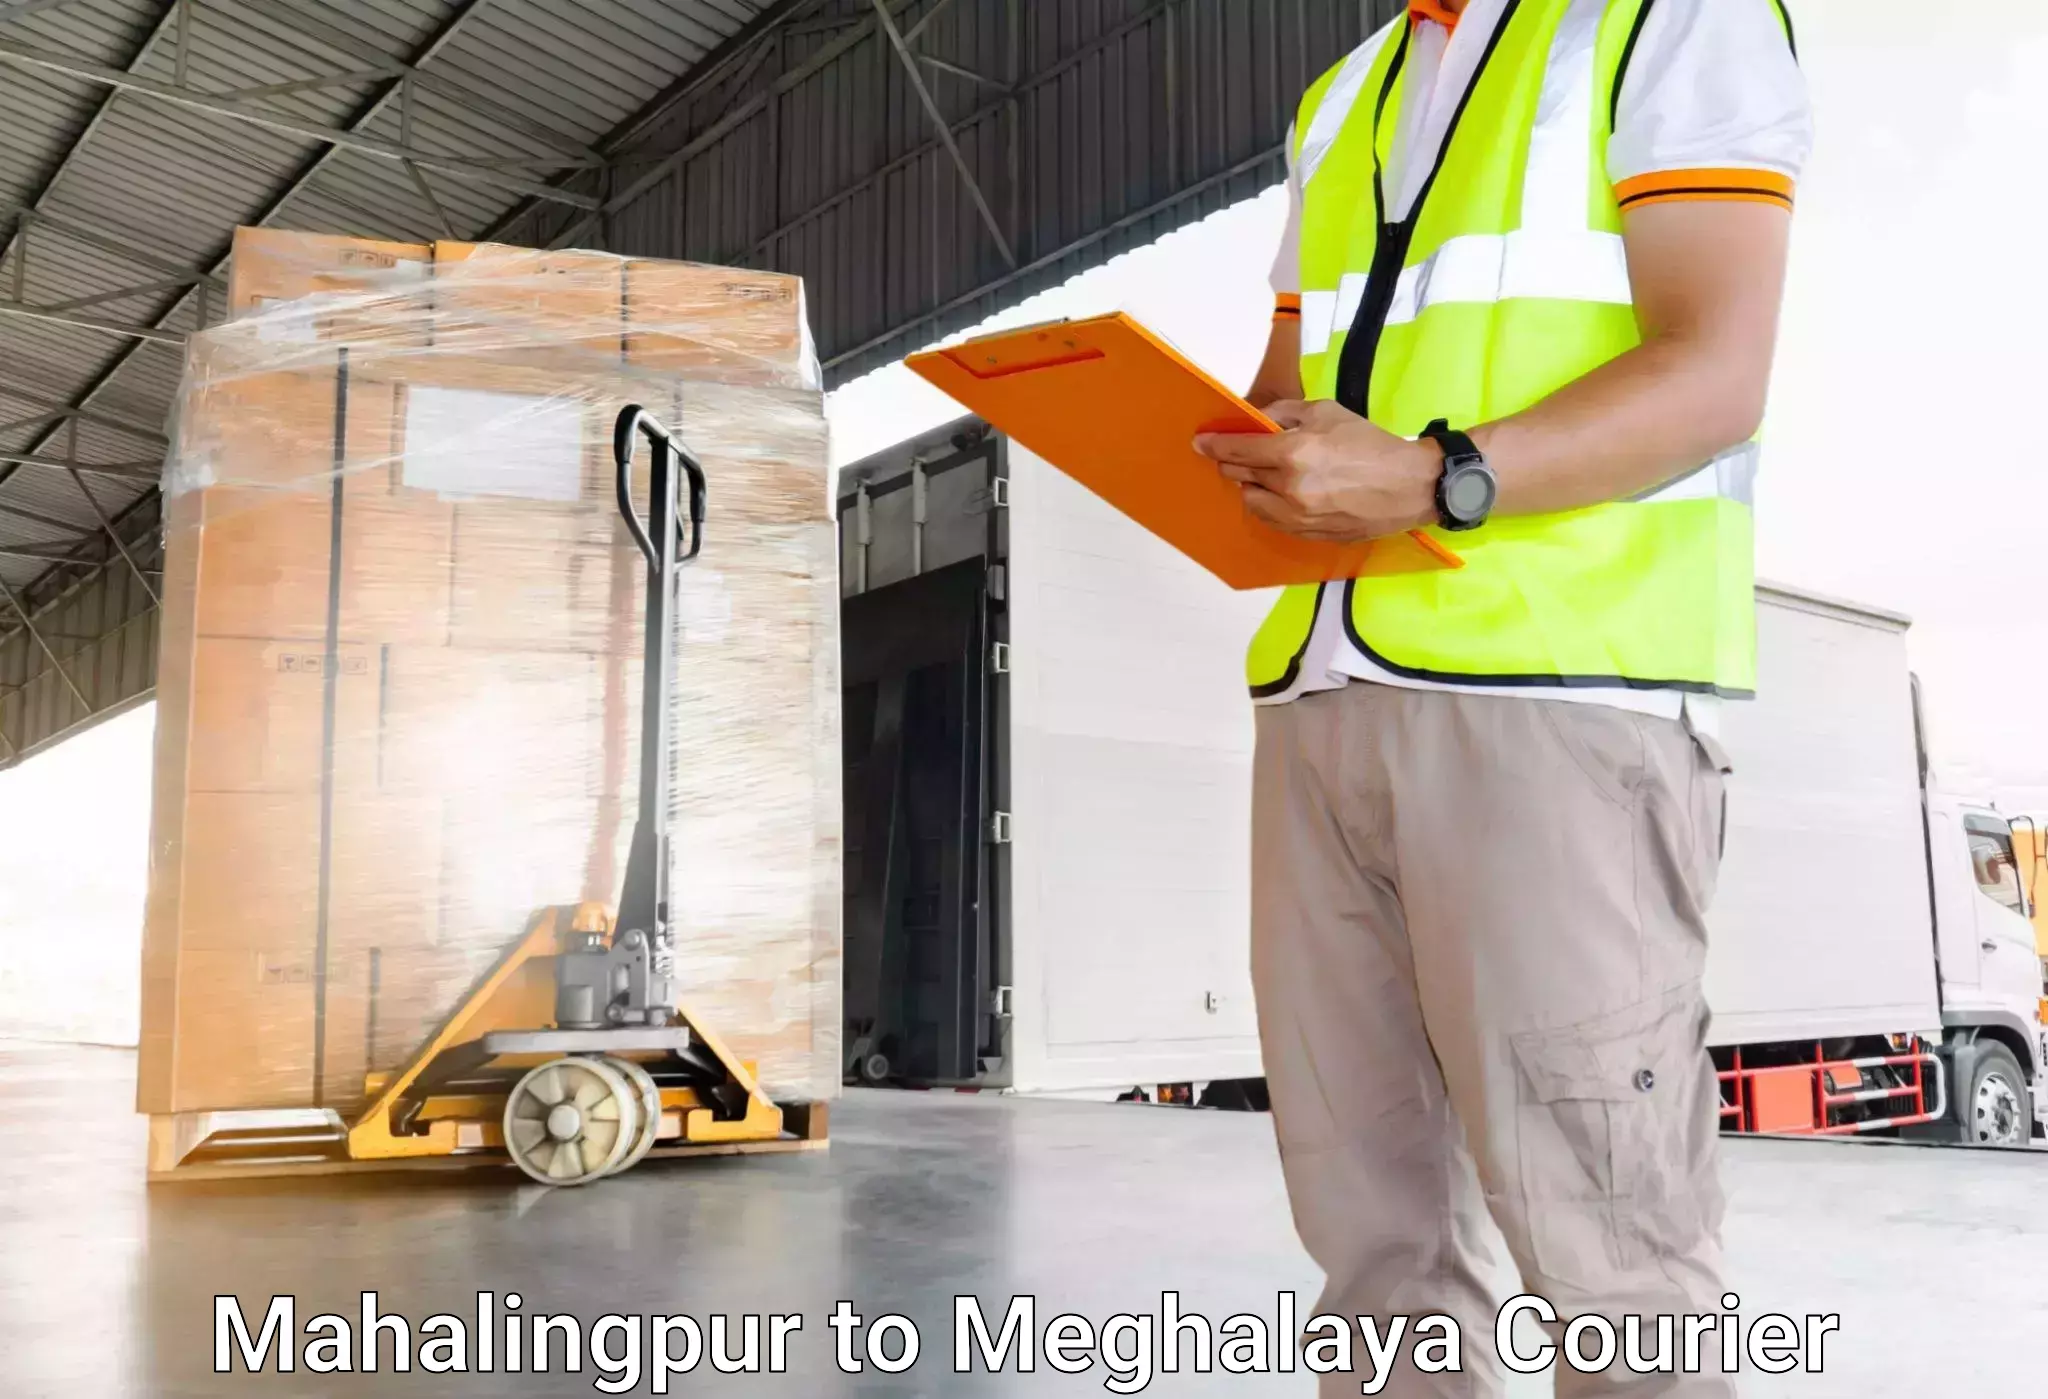 Baggage shipping experts Mahalingpur to Meghalaya